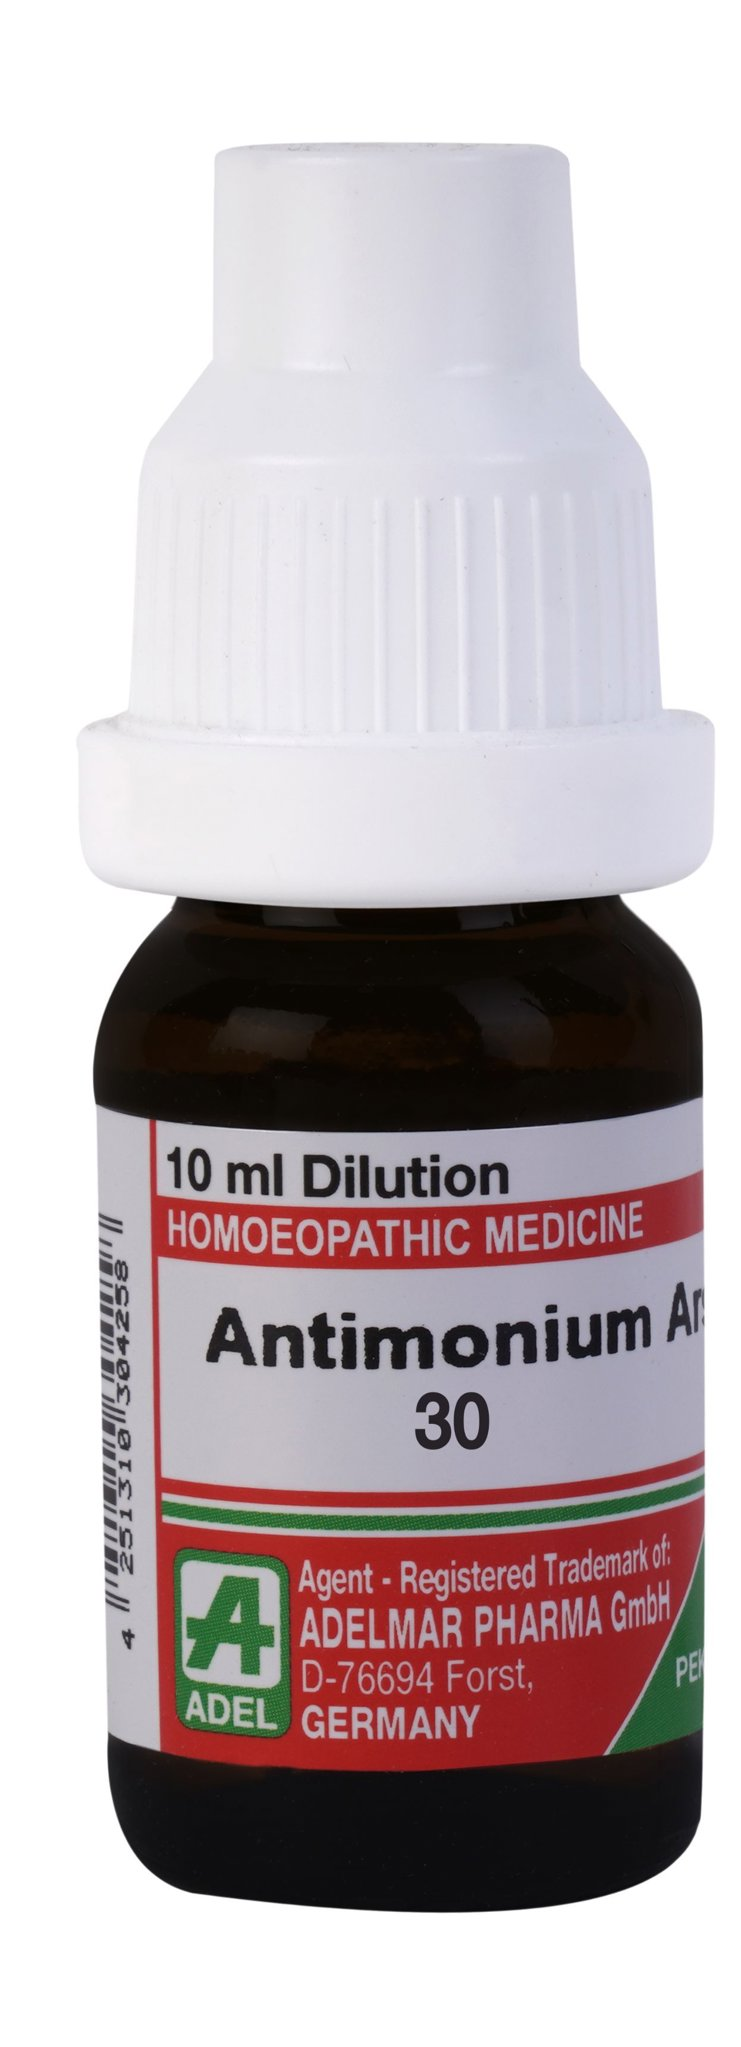 Picture of ADEL Antimonium Ars Dilution - 10 ml